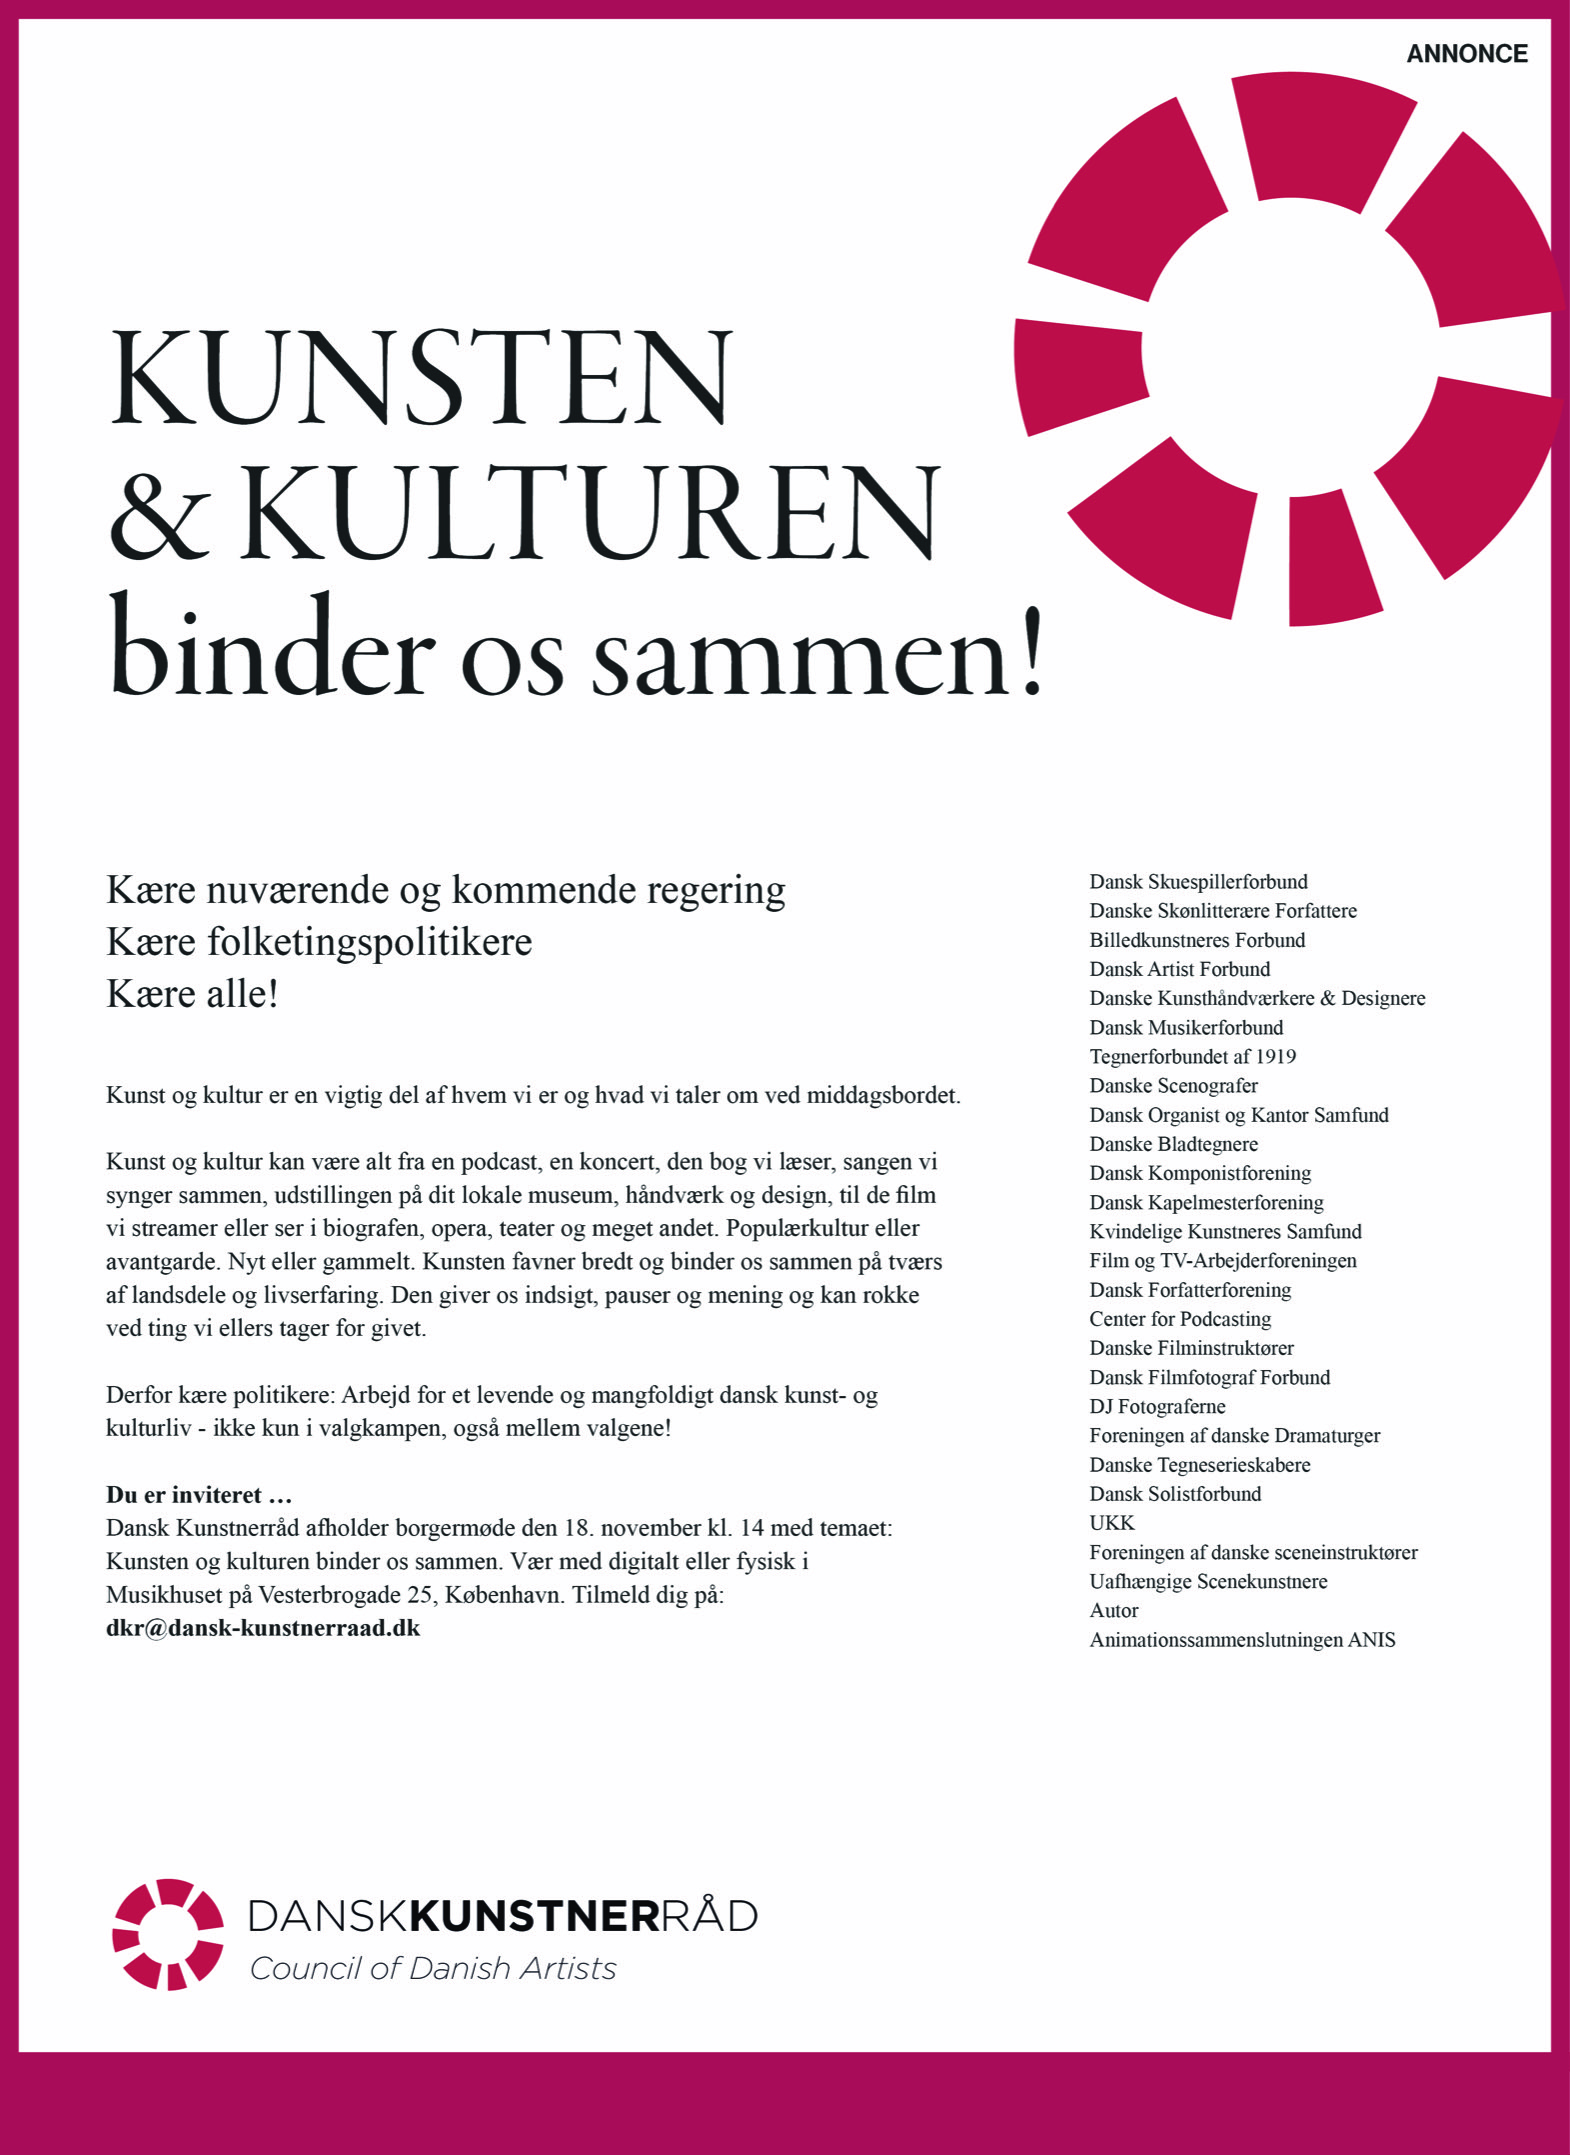 DKoD og medlemmer af Dansk Kunstnerråd i opråb til politikerne